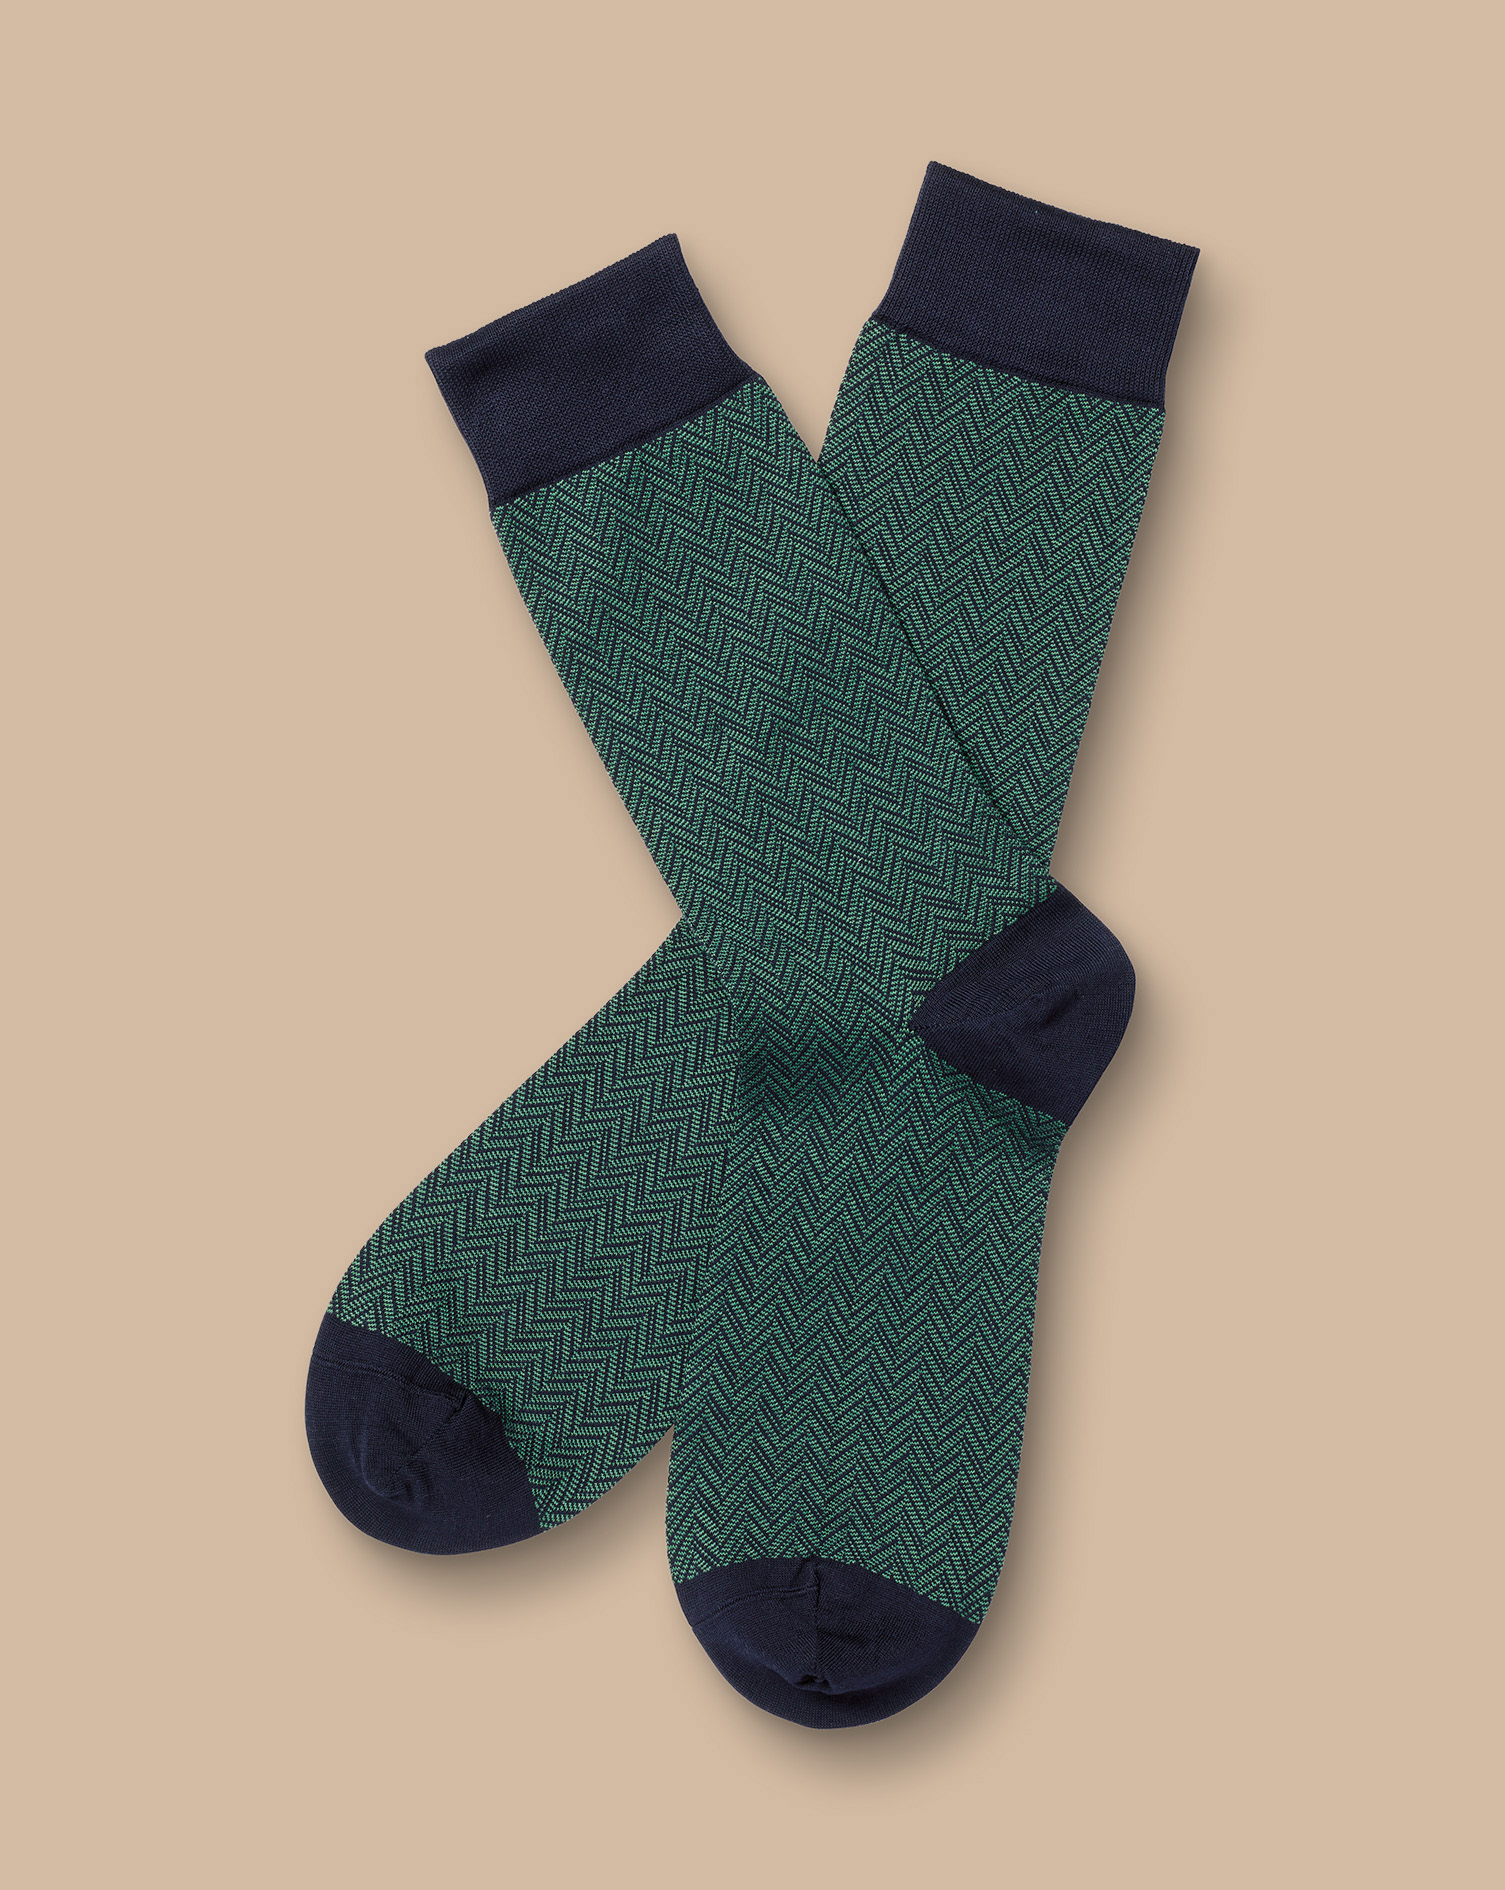 Men's Charles Tyrwhitt Chevron Socks - Green & Navy Size 6-10 Cotton
